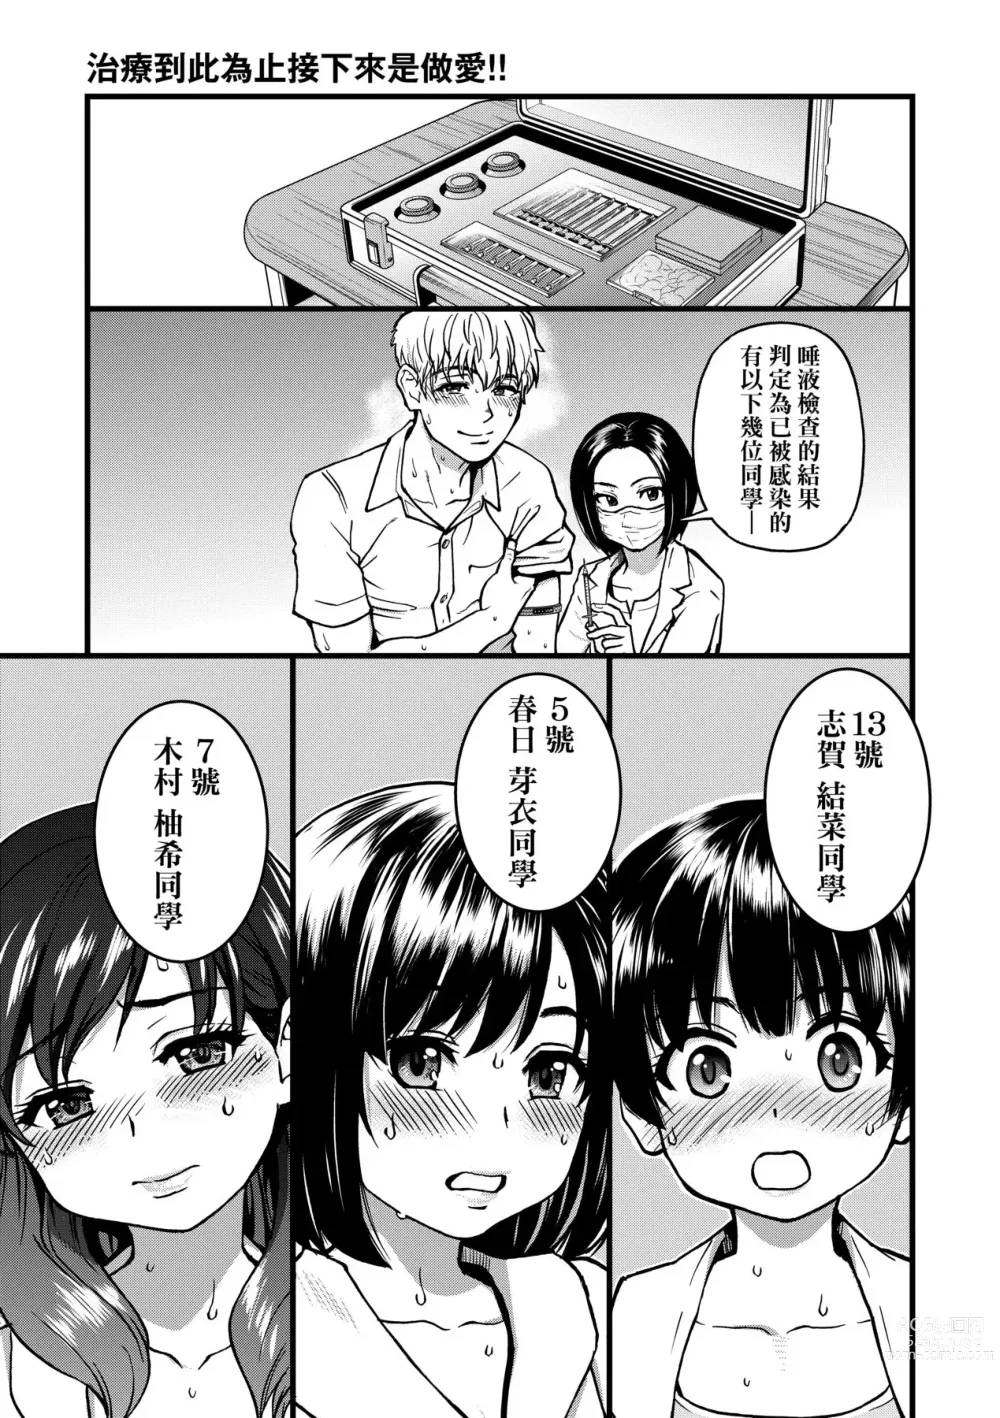 Page 102 of manga 靠我的精液本復快癒!!